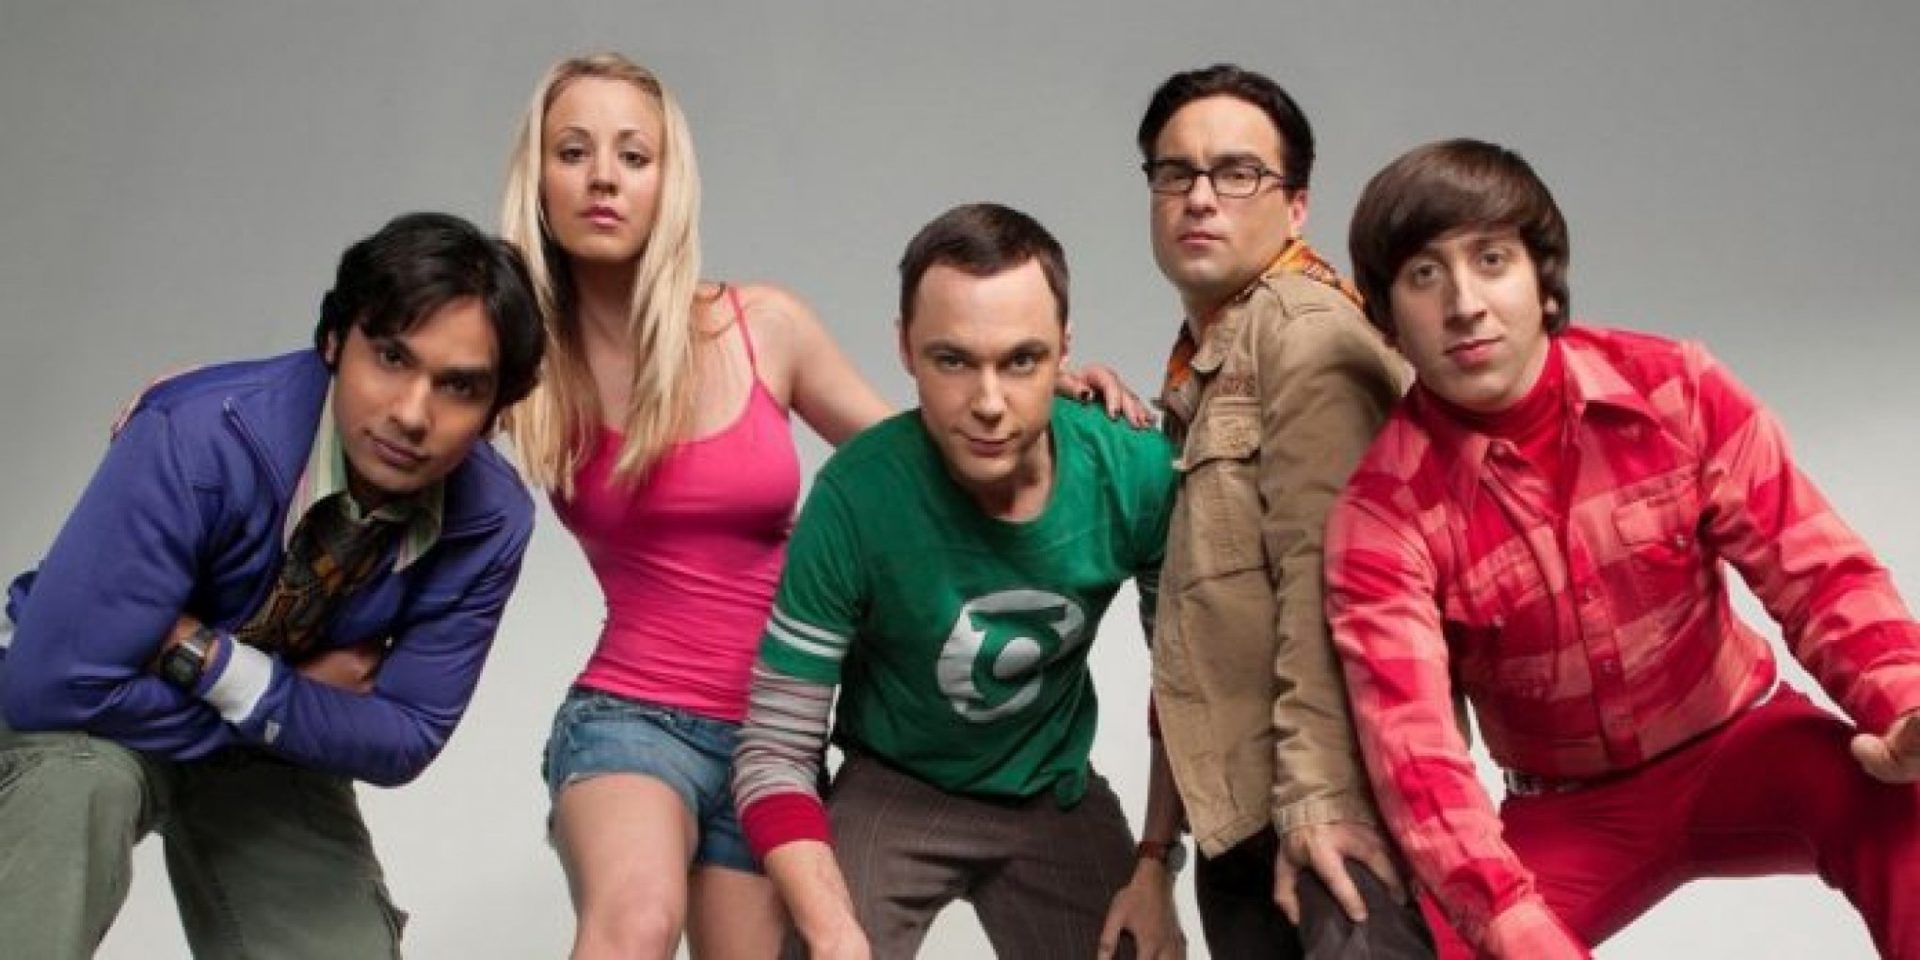 Canceladas? CBS revela futuro de derivada de Big Bang Theory, NCIS e mais séries